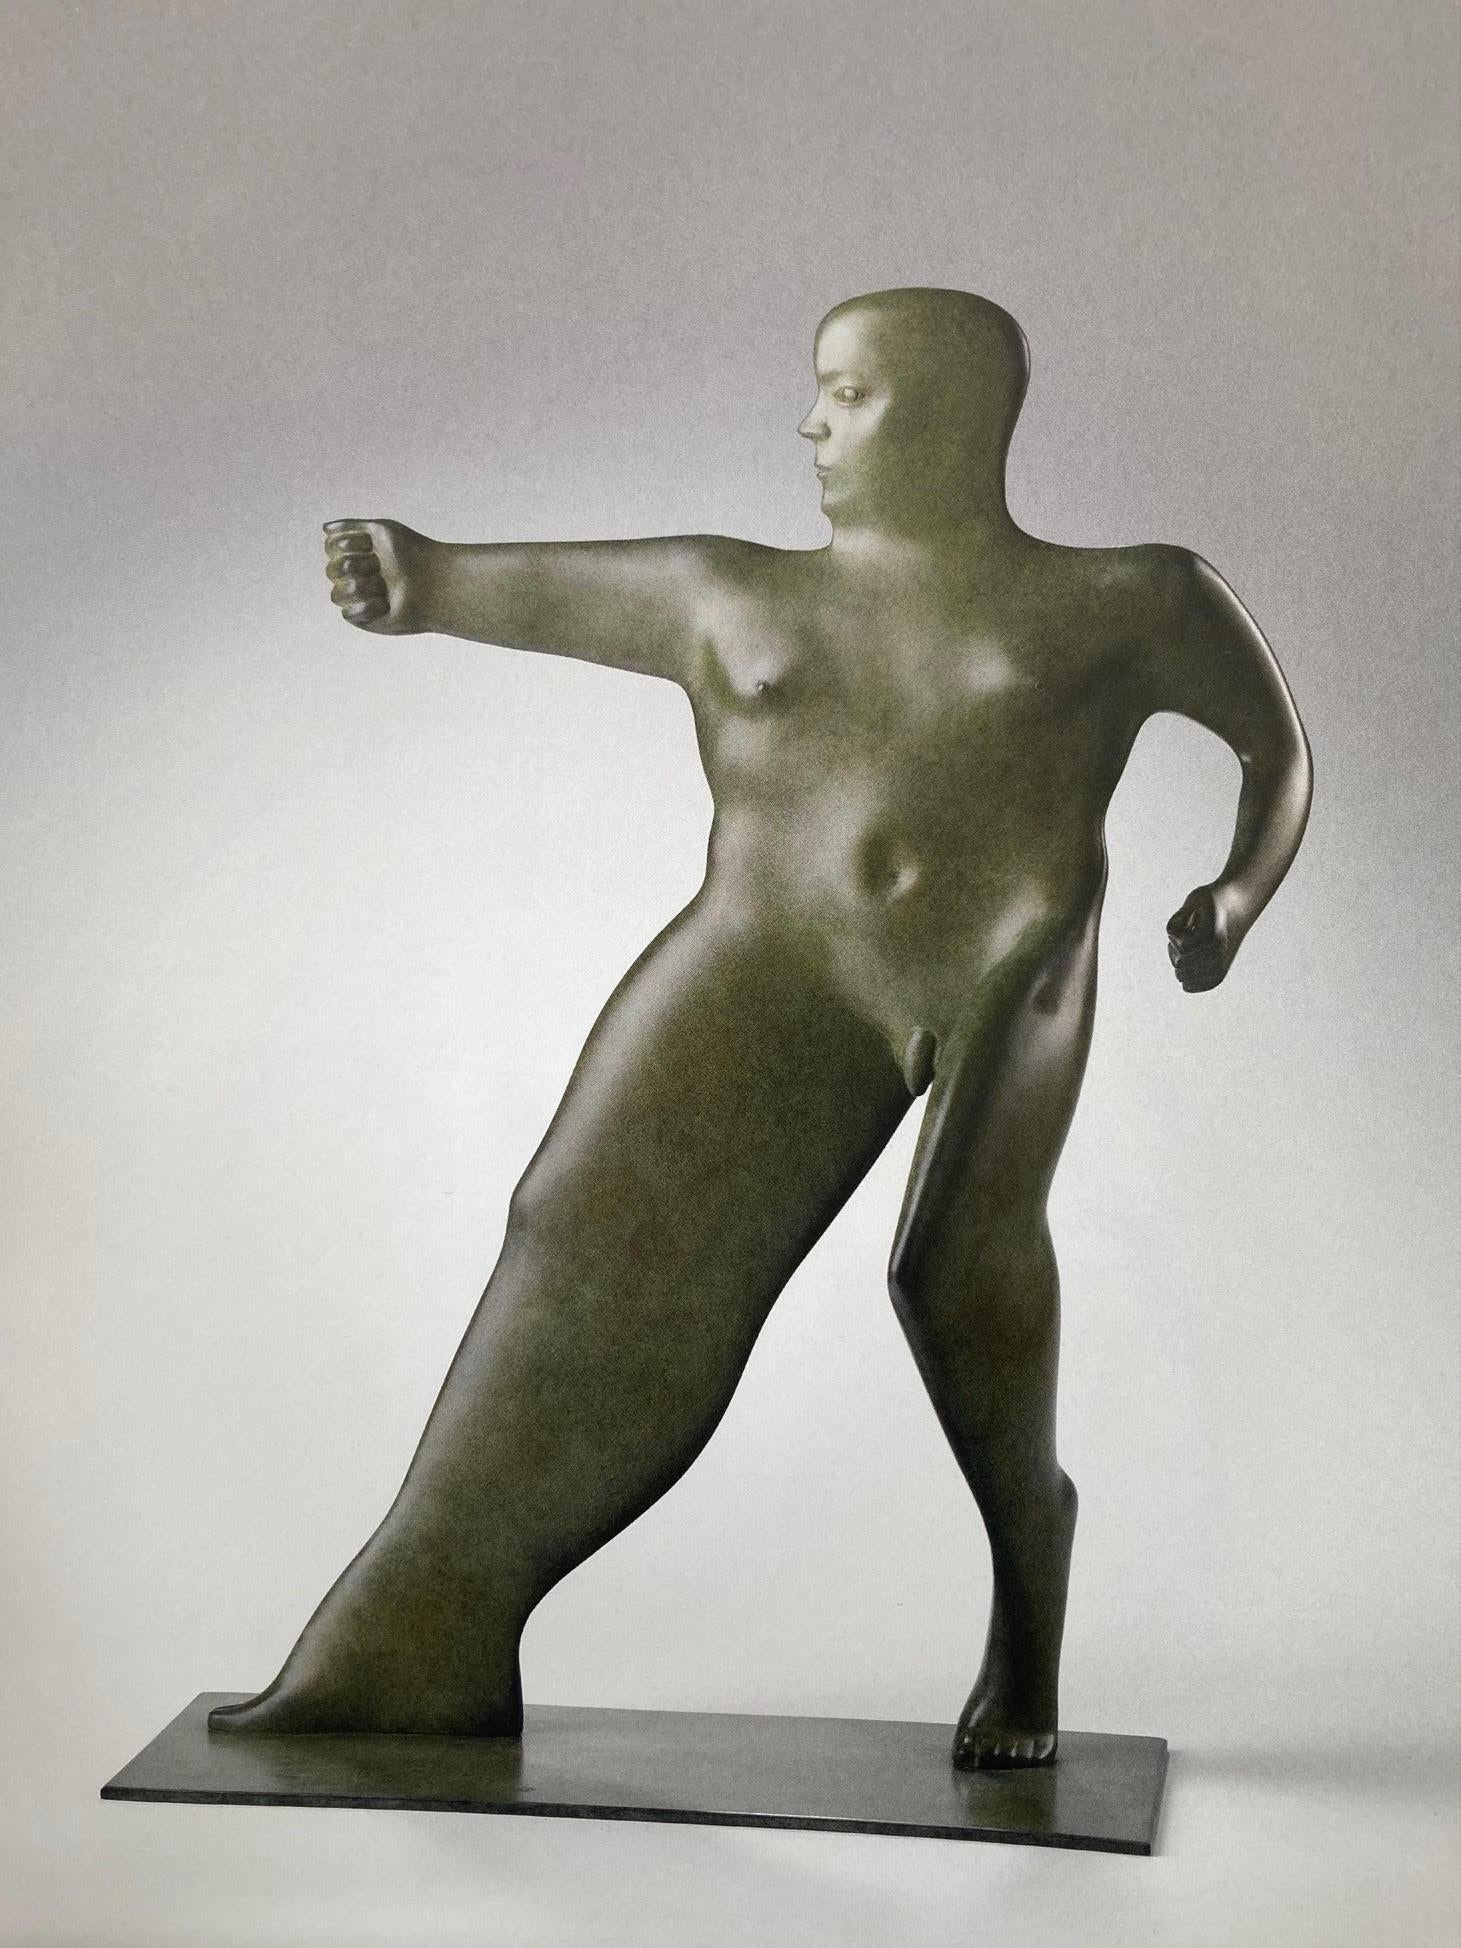 Figurative Sculpture KOBE - Sculpture - Figuratif contemporain d'homme debout en bronze d'Adonis